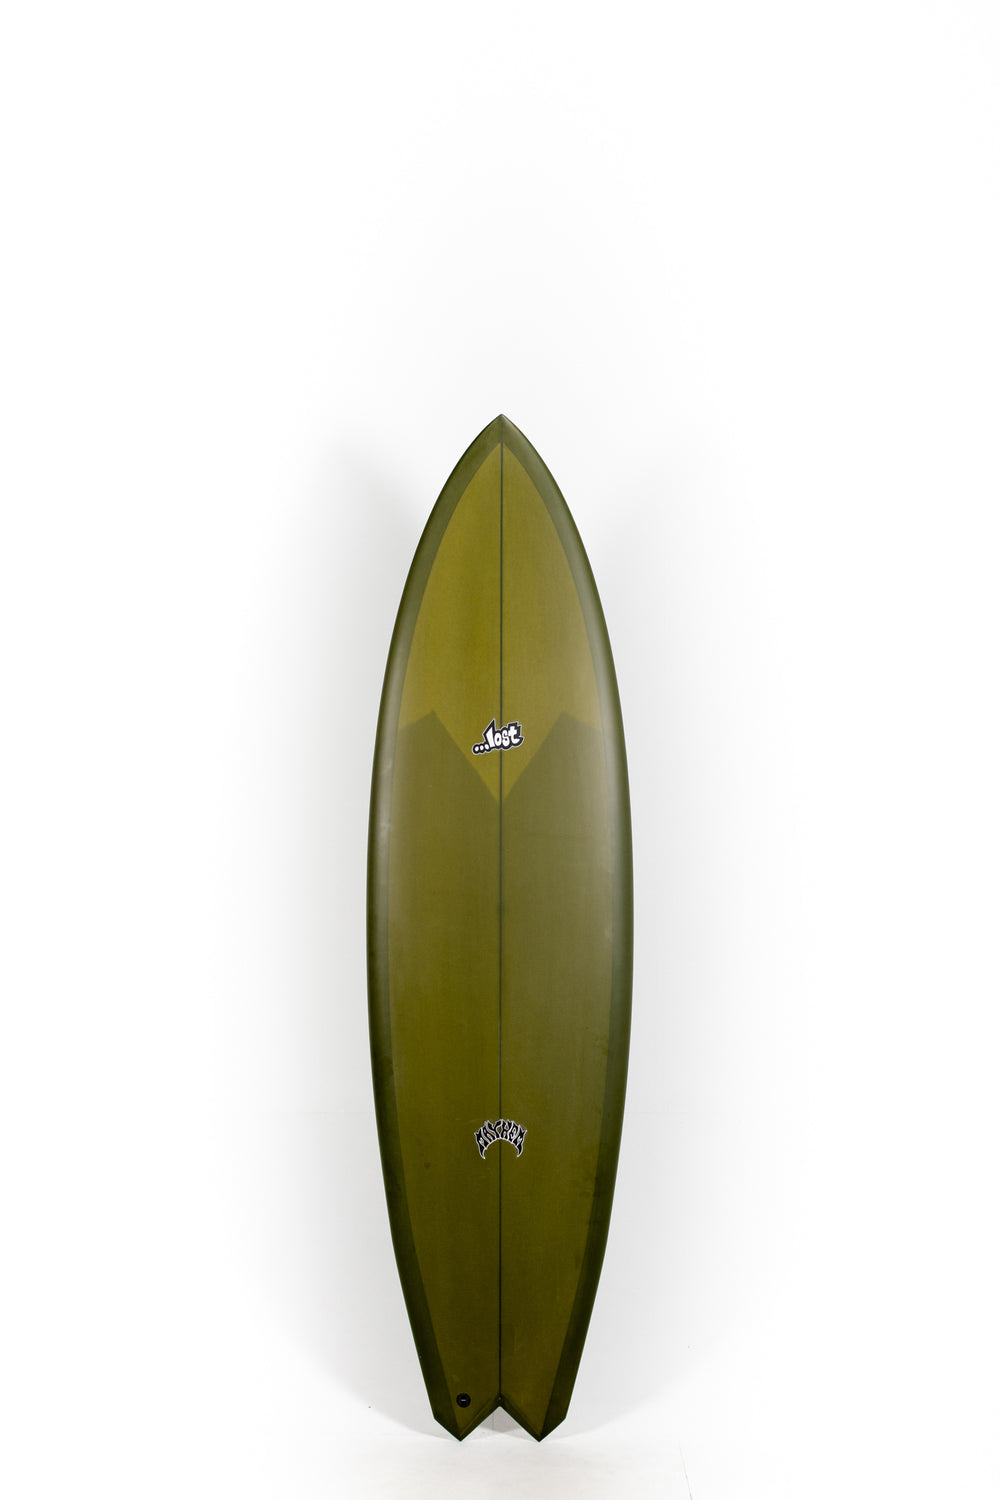 Pukas Surf Shop - Lost Surfboards - GLYDRA by Matt Biolos - 6'8